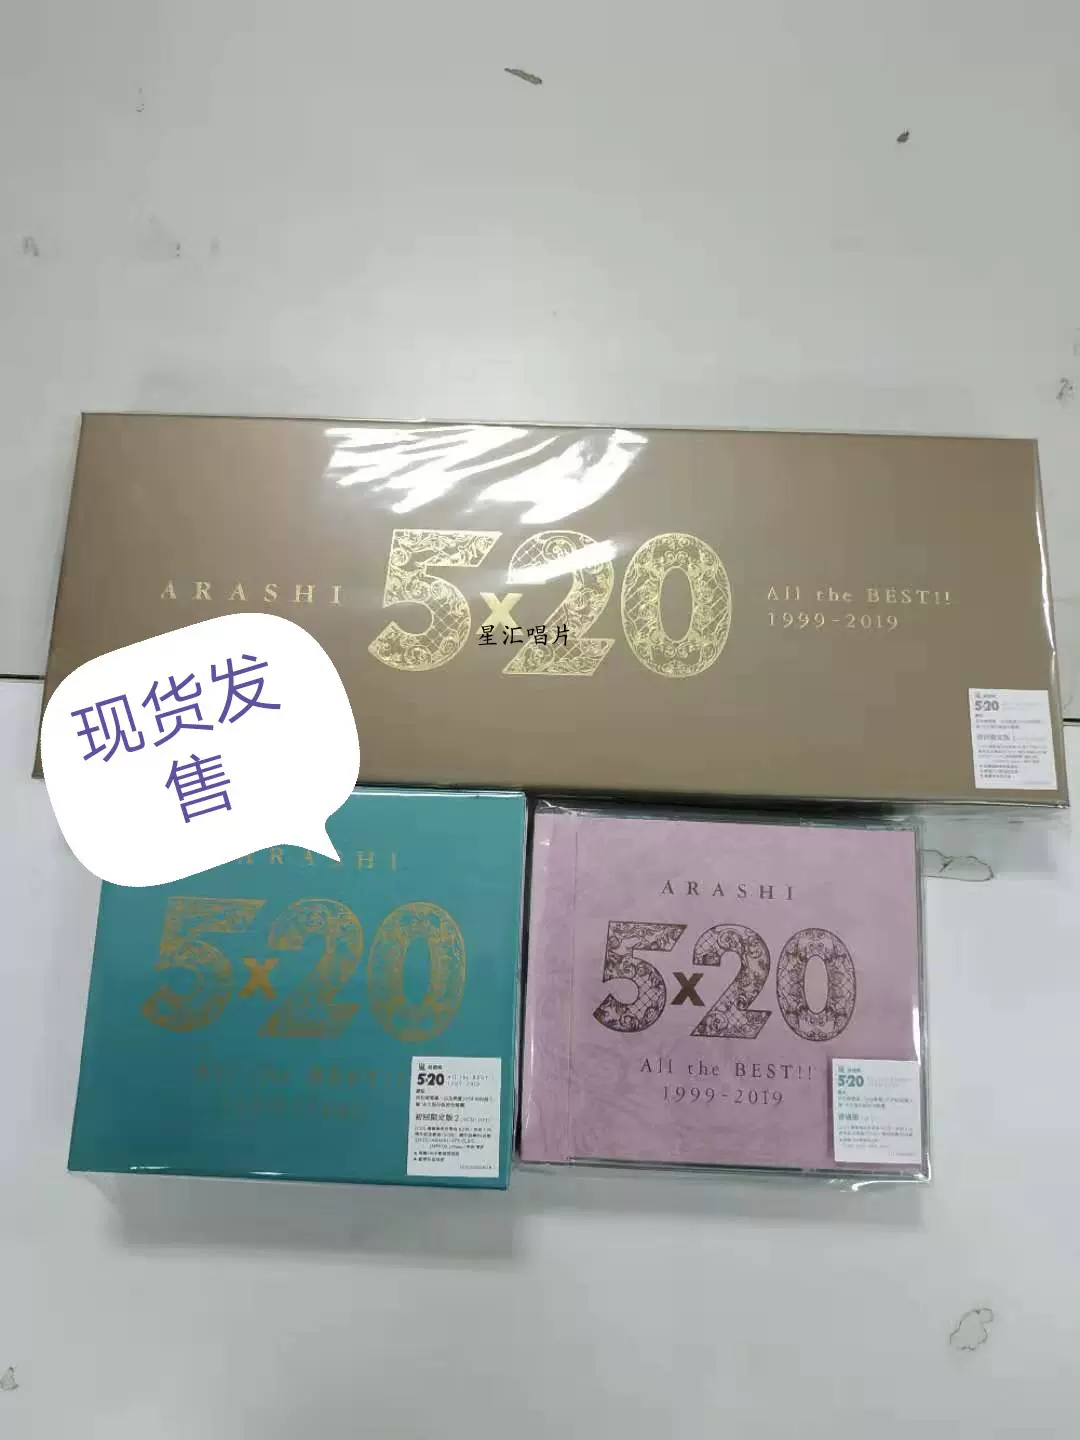 現貨嵐ARASHI 5x20 All the BEST1999-2019 初回限定盤1 4CD+DVD